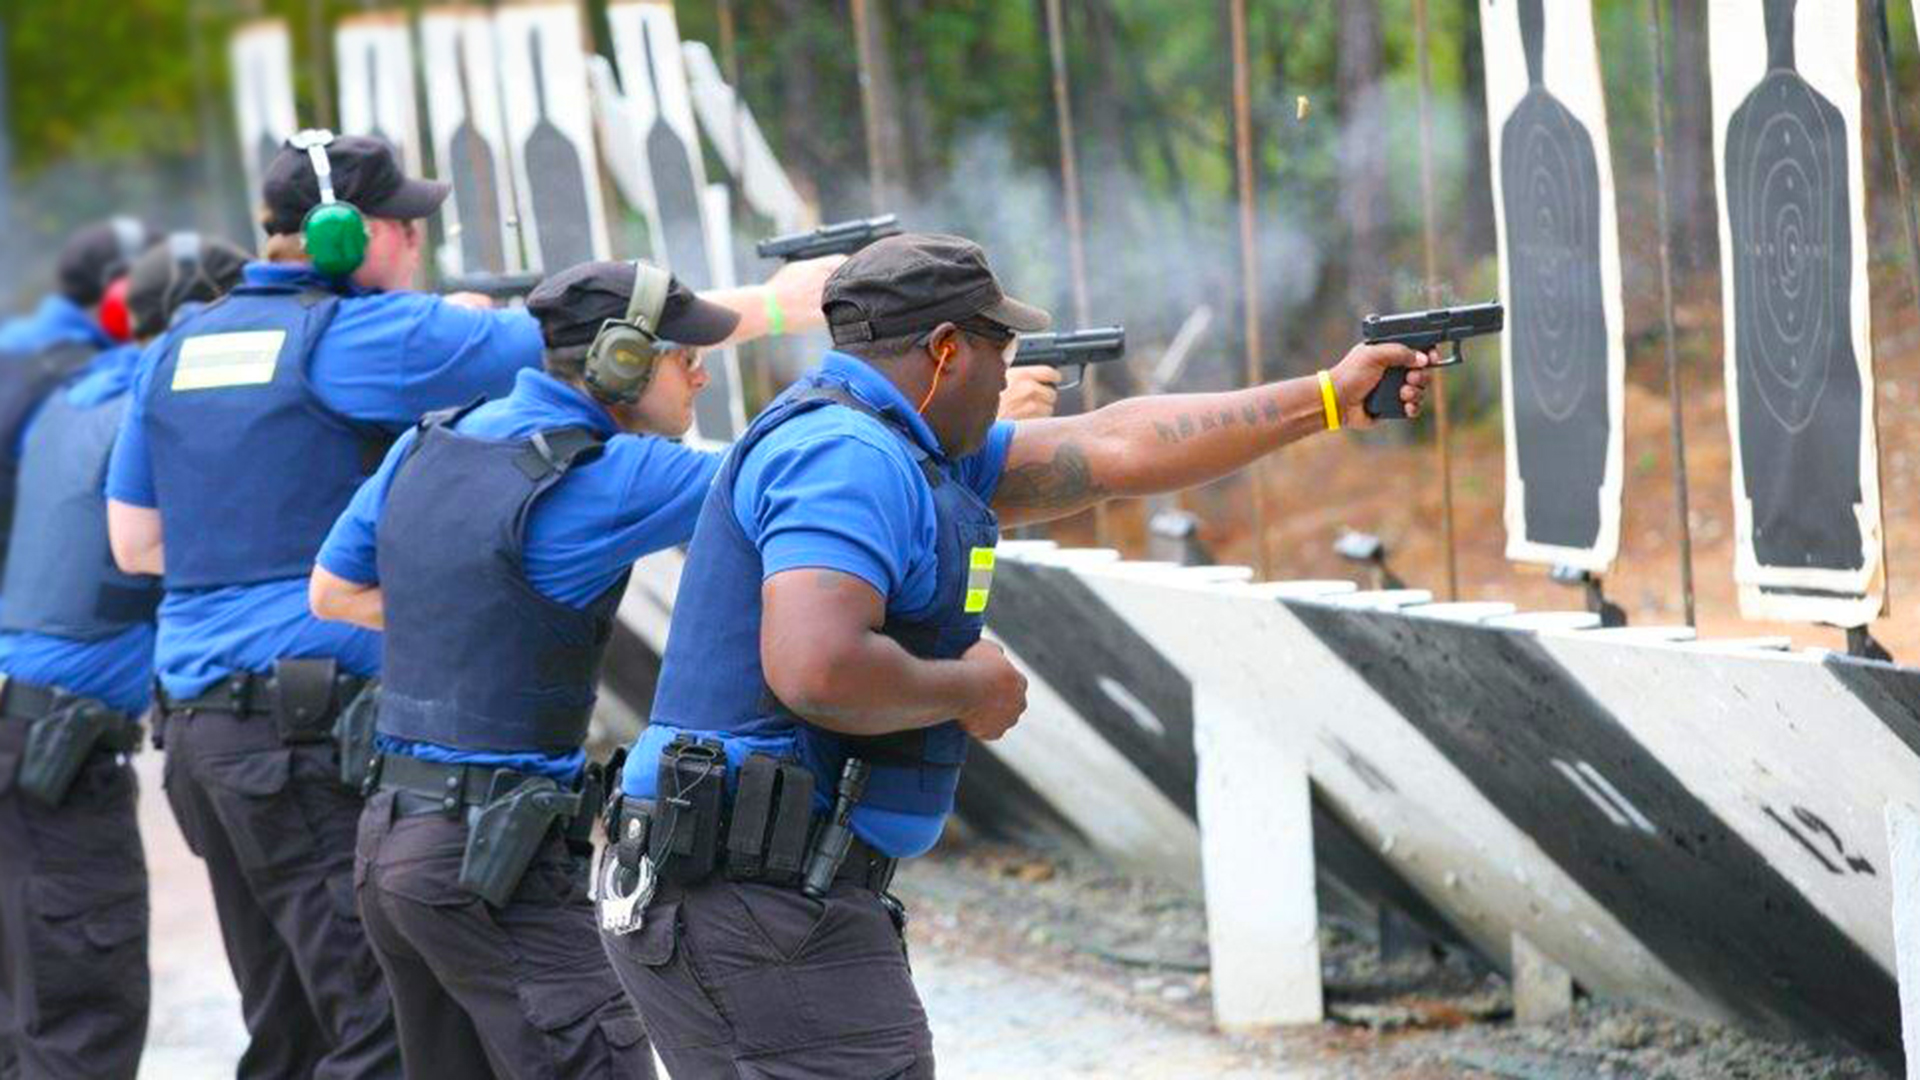 Basic Law Enforcement Training Academy